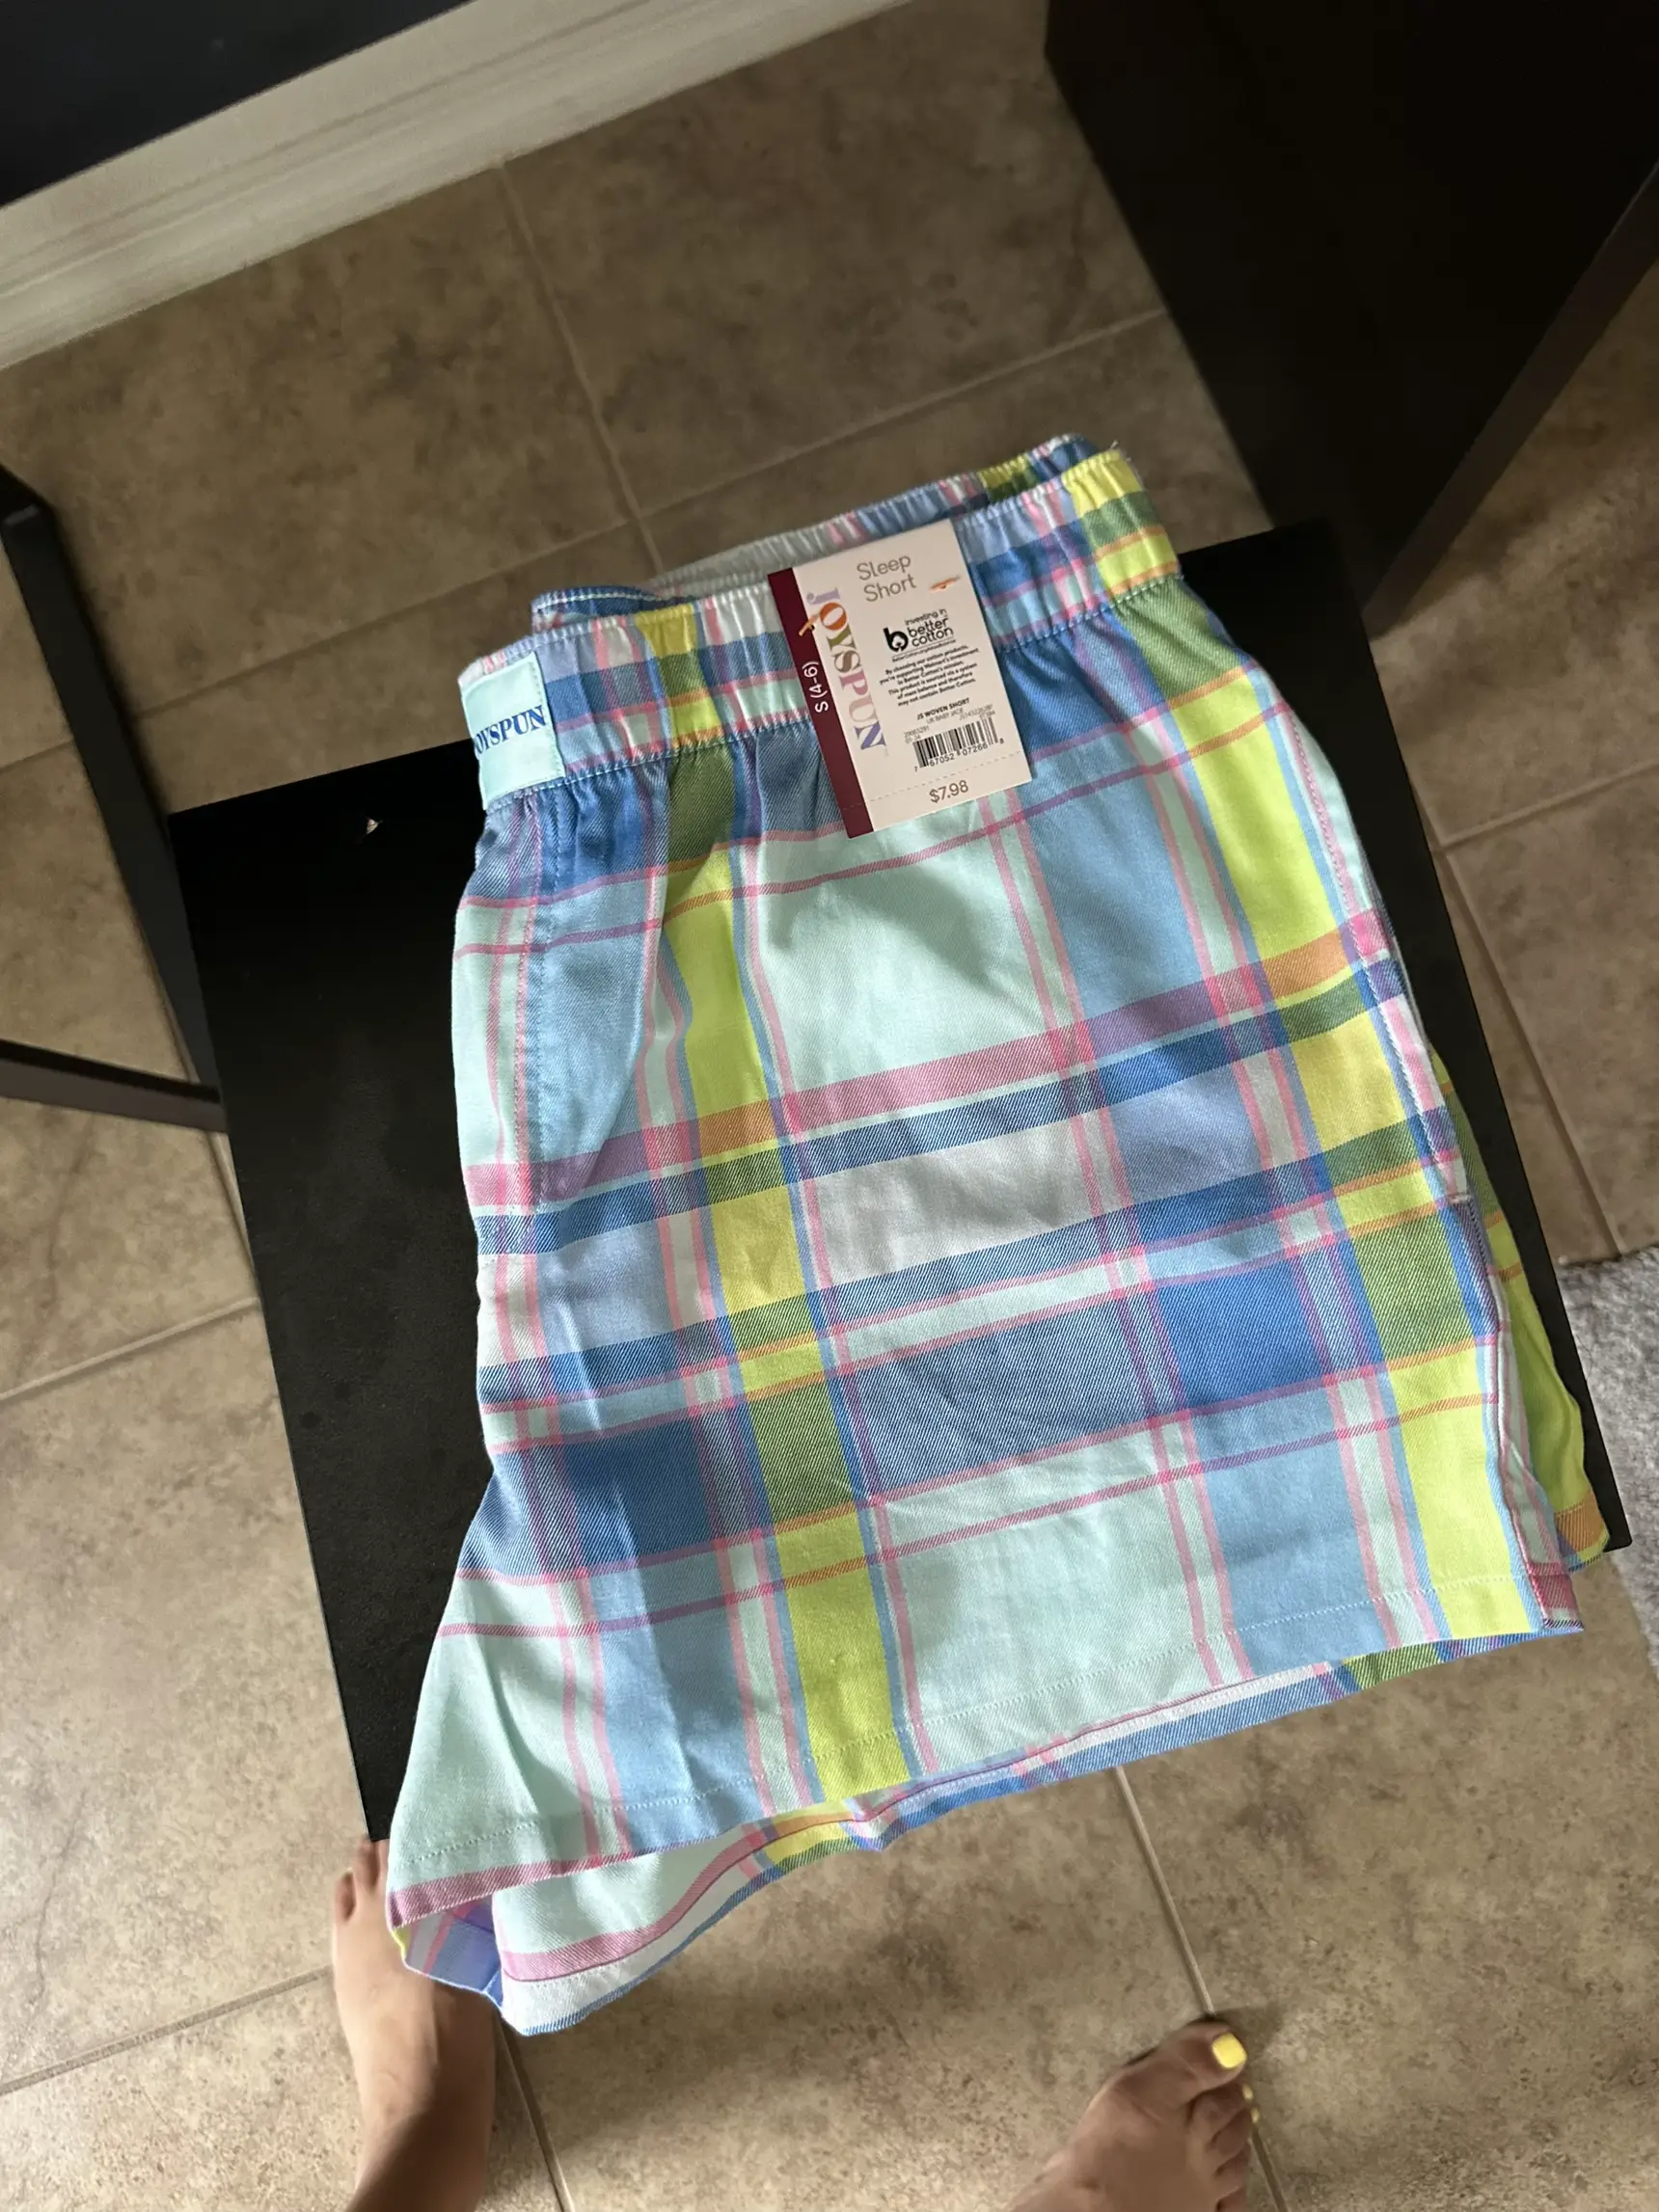 Joyspun Women's Woven Print Boxer Sleep Shorts, Sizes S to 3X 